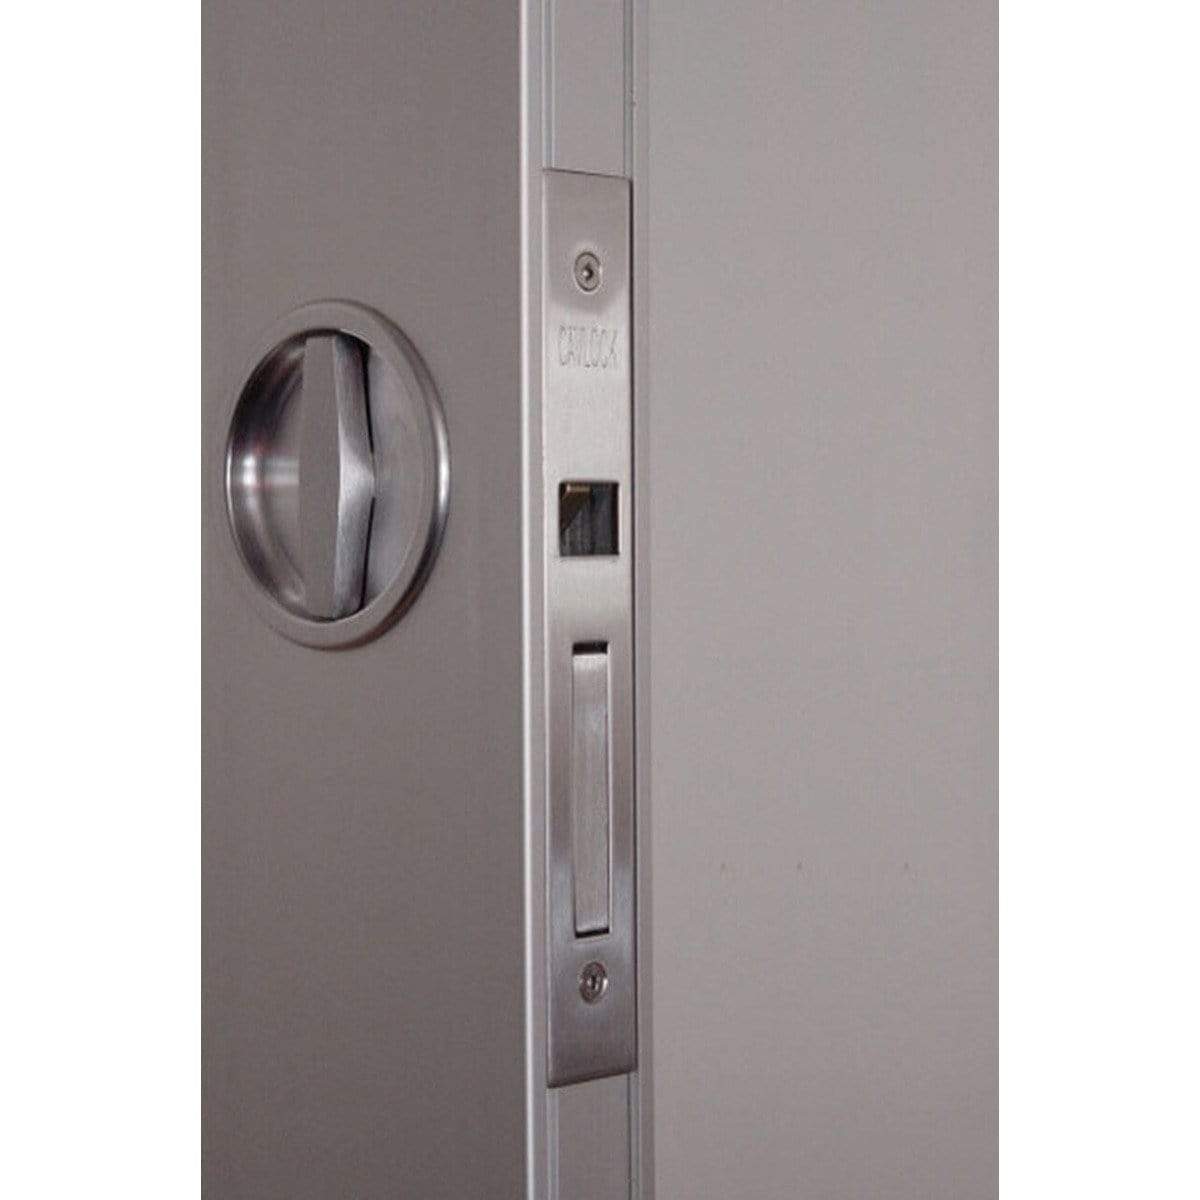 Flush Turn Pocket Door Handle - Sliding Barn Door Hardware by RealCraft